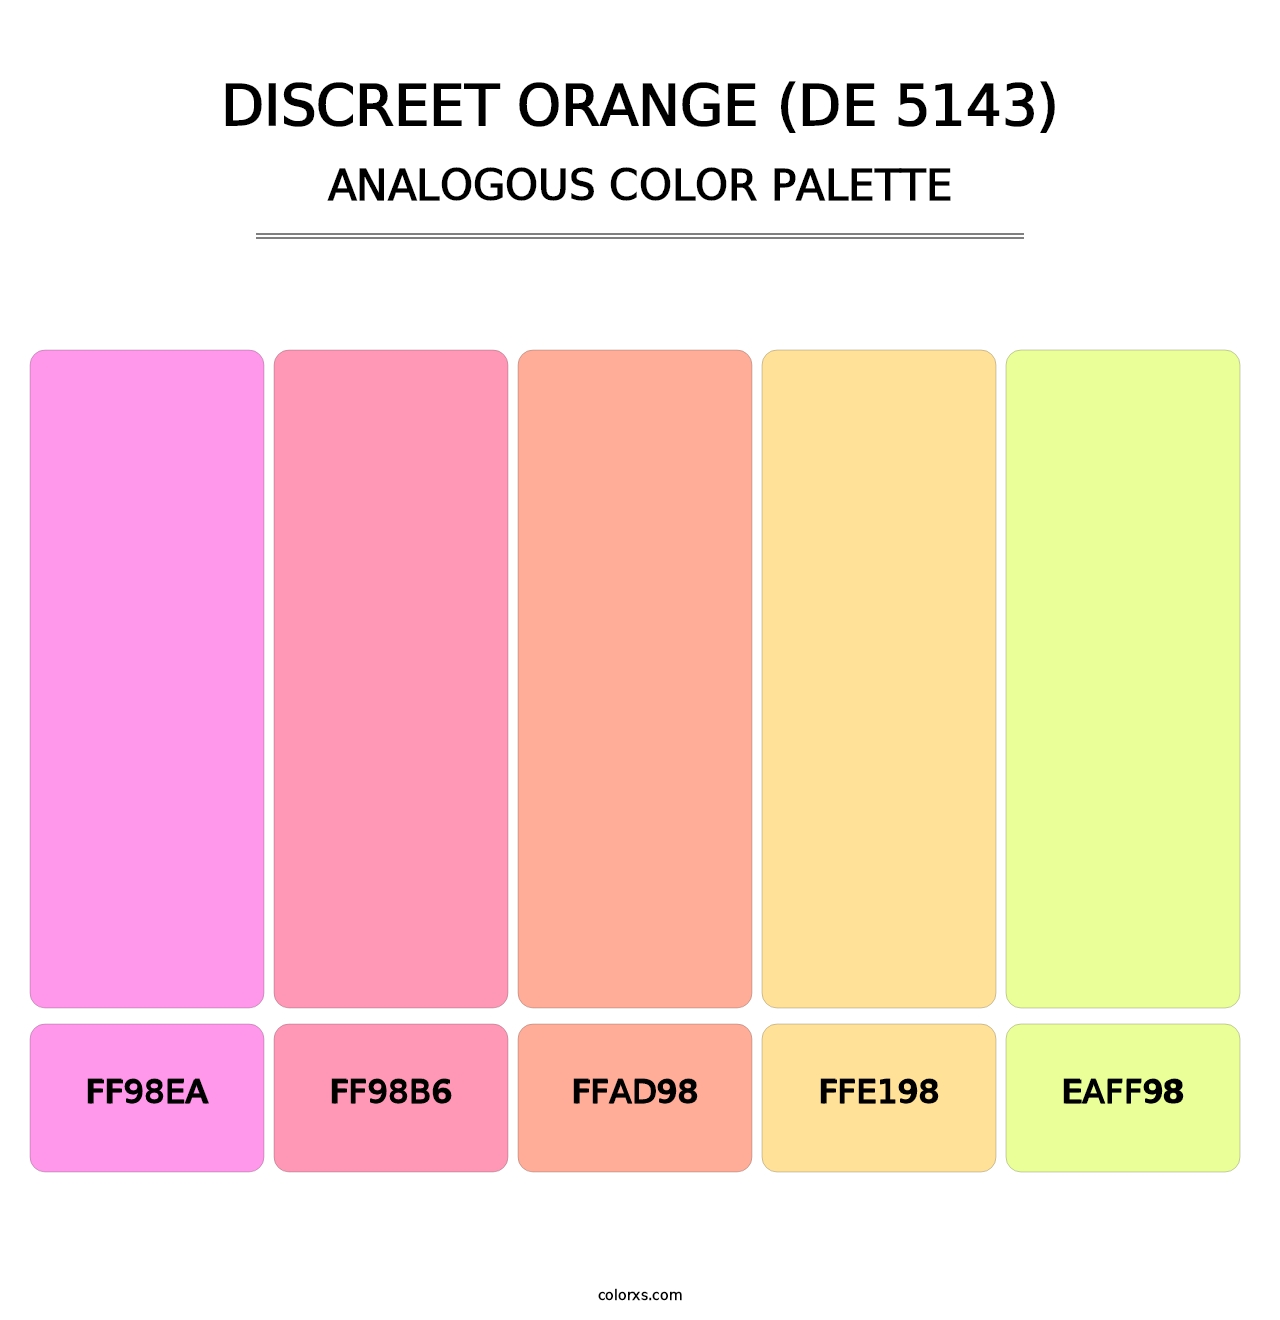 Discreet Orange (DE 5143) - Analogous Color Palette